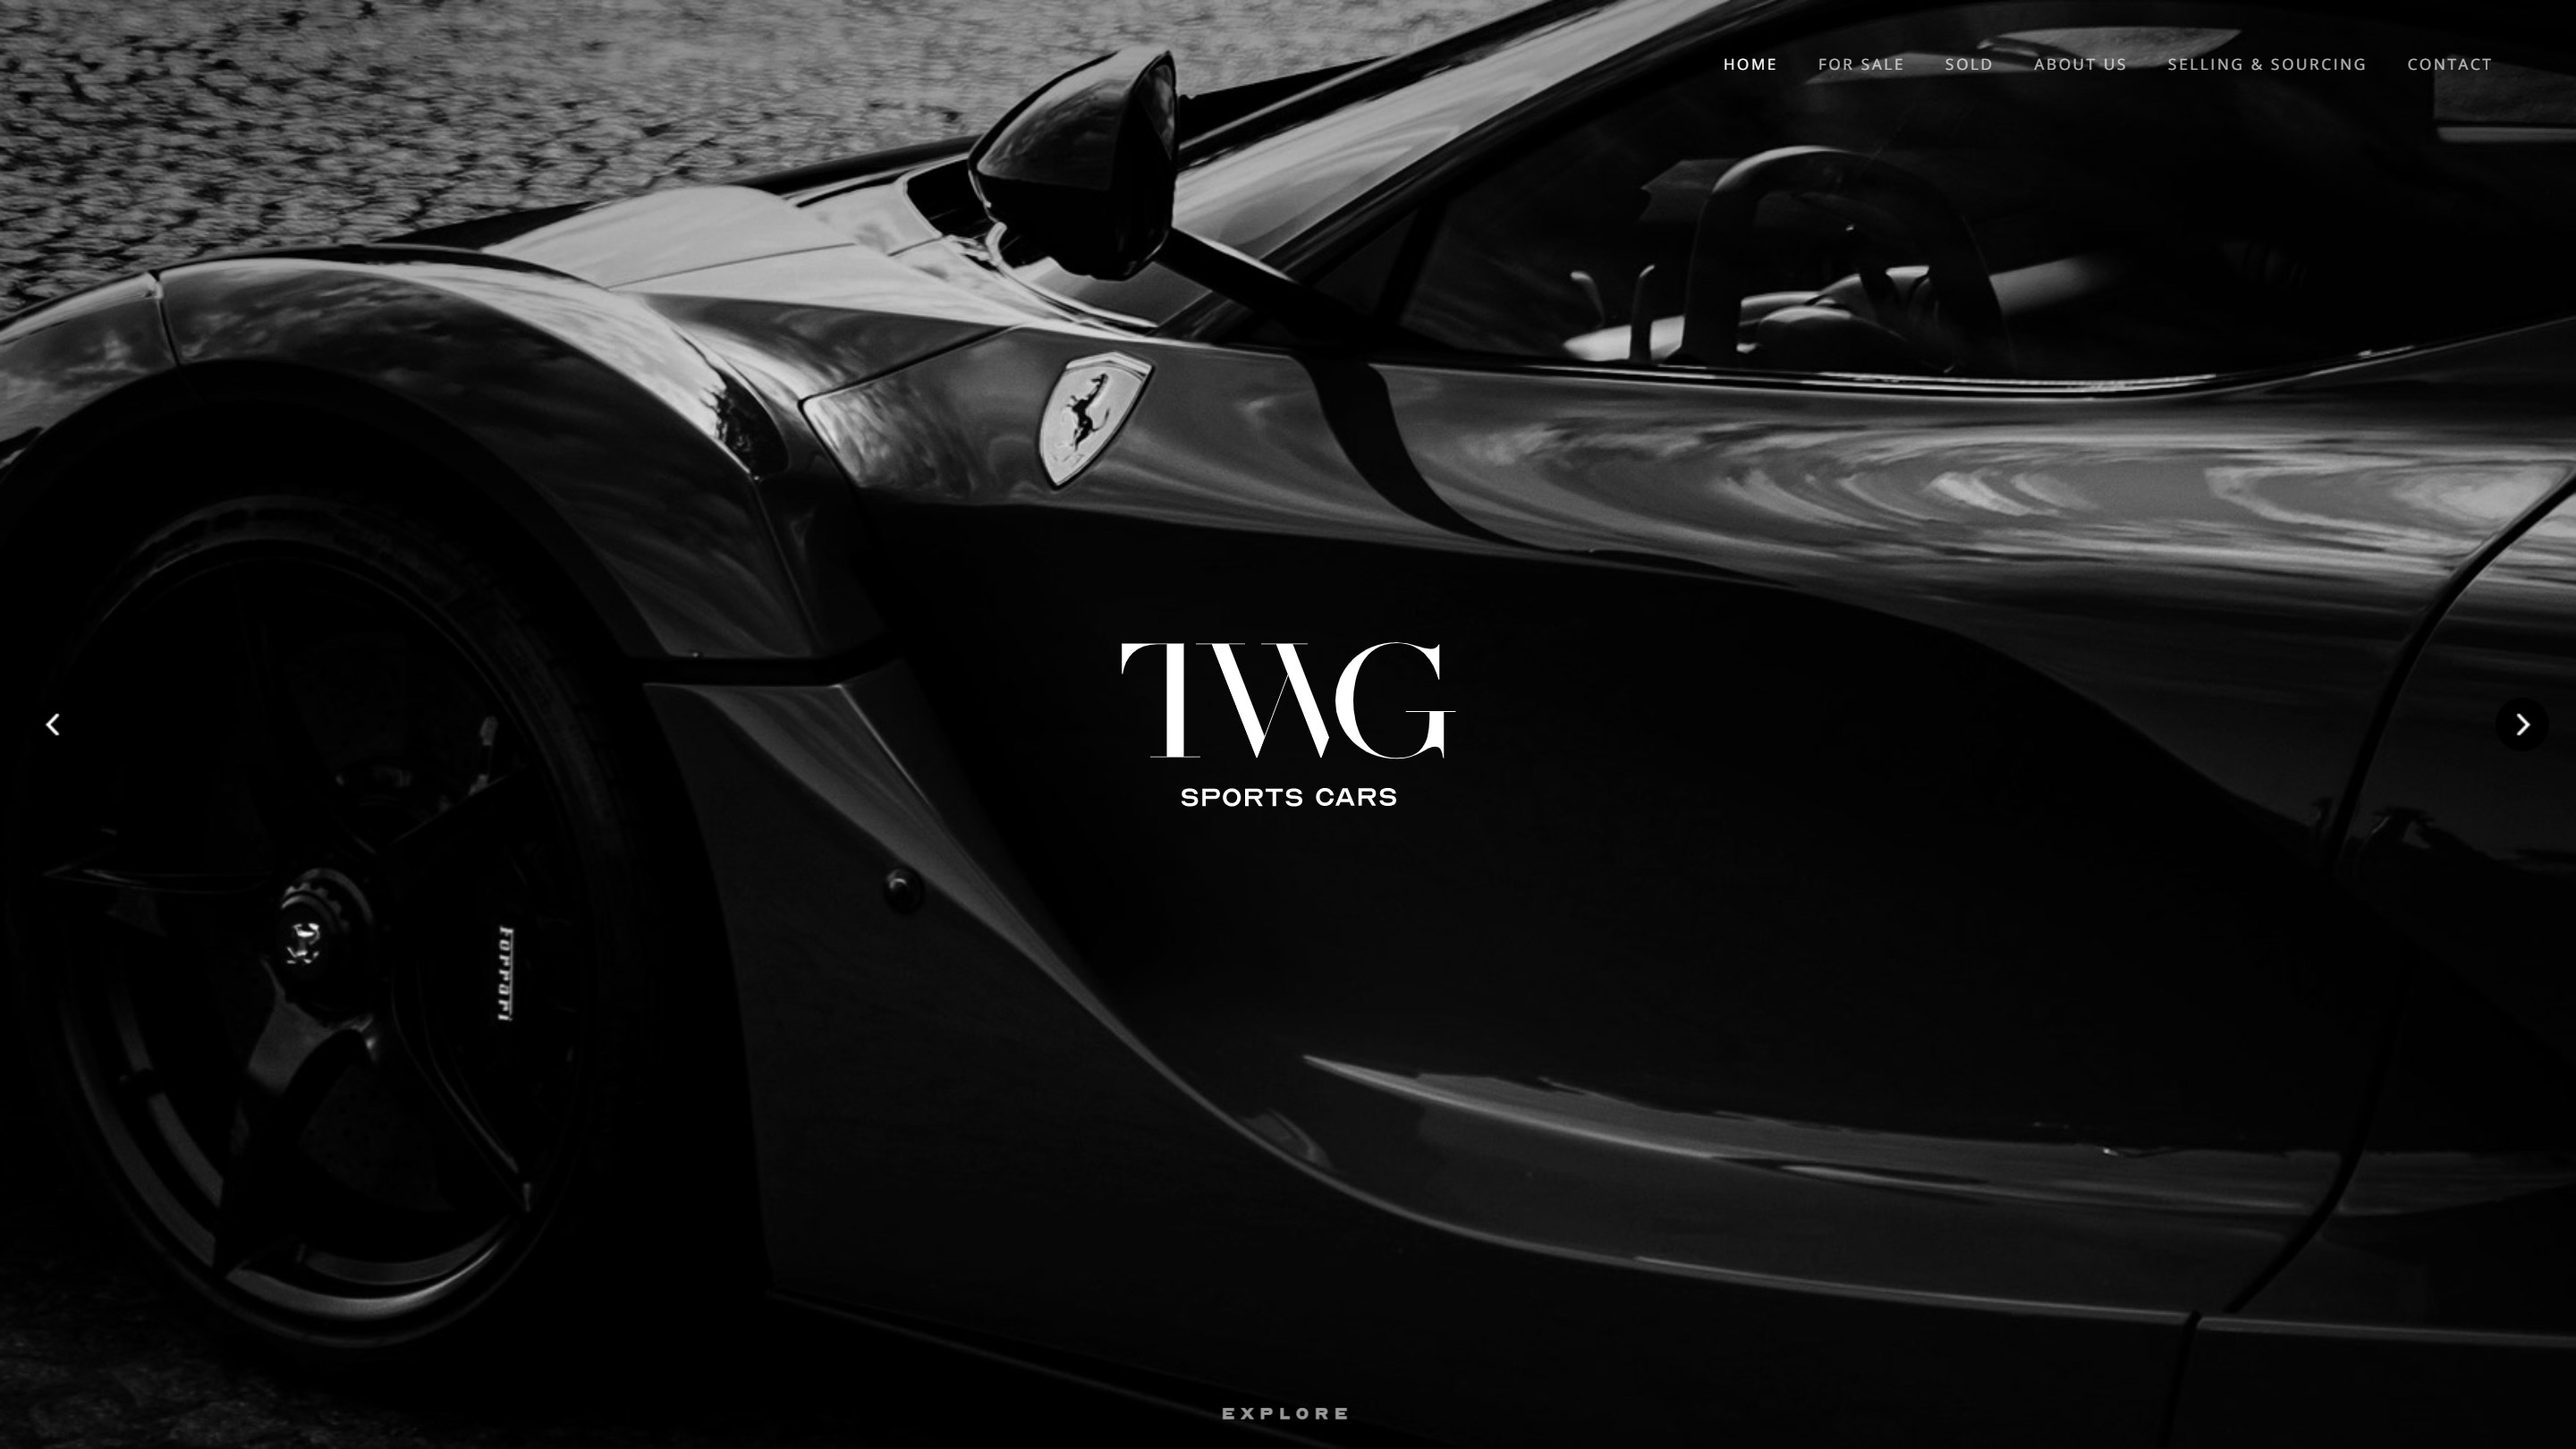 TWG Sports Cars